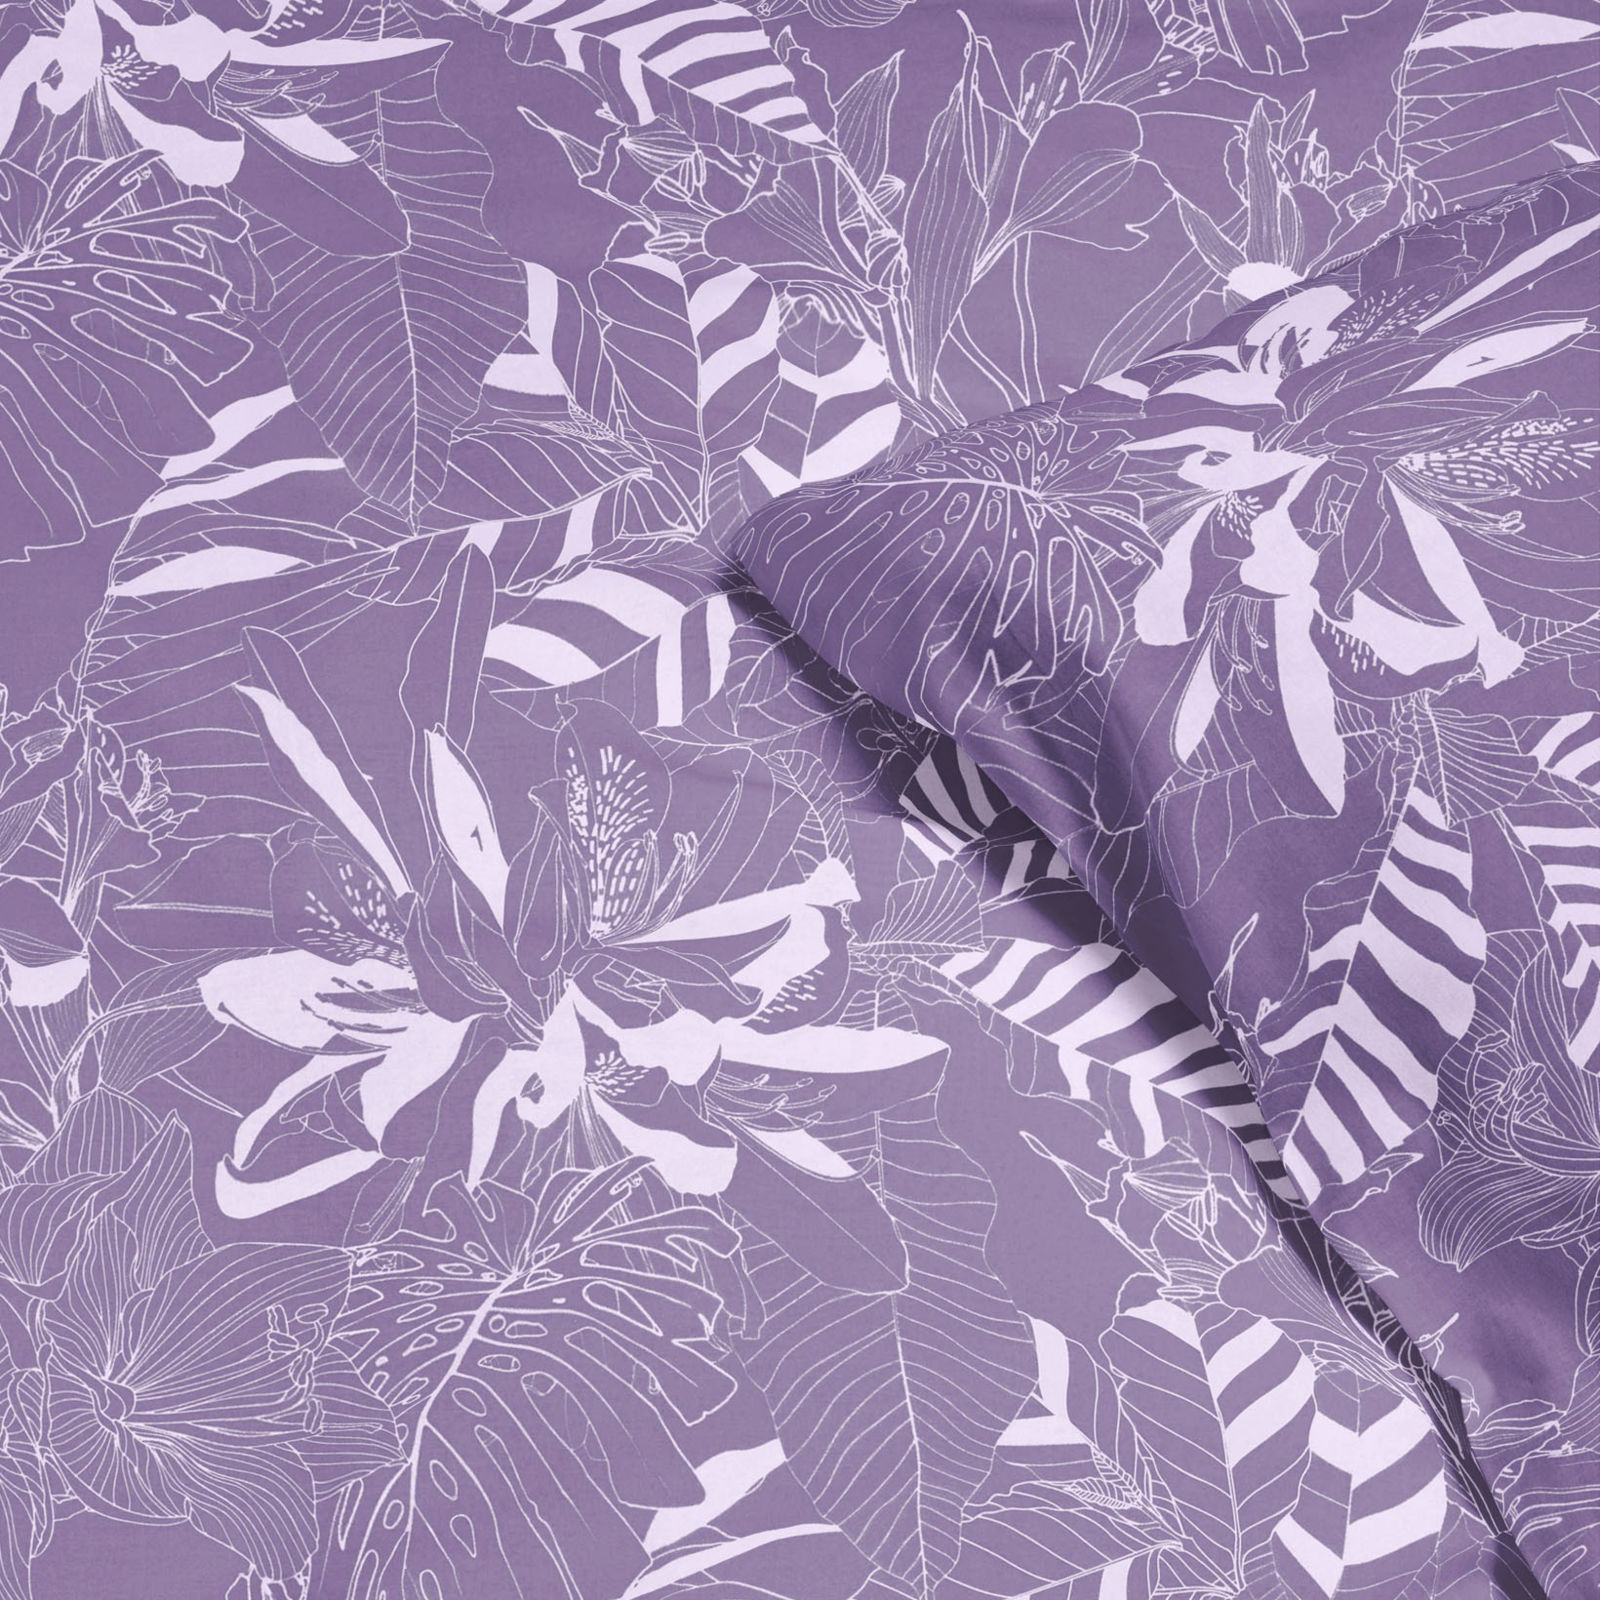 Saténové posteľné obliečky Deluxe - biele rastliny na fialovom